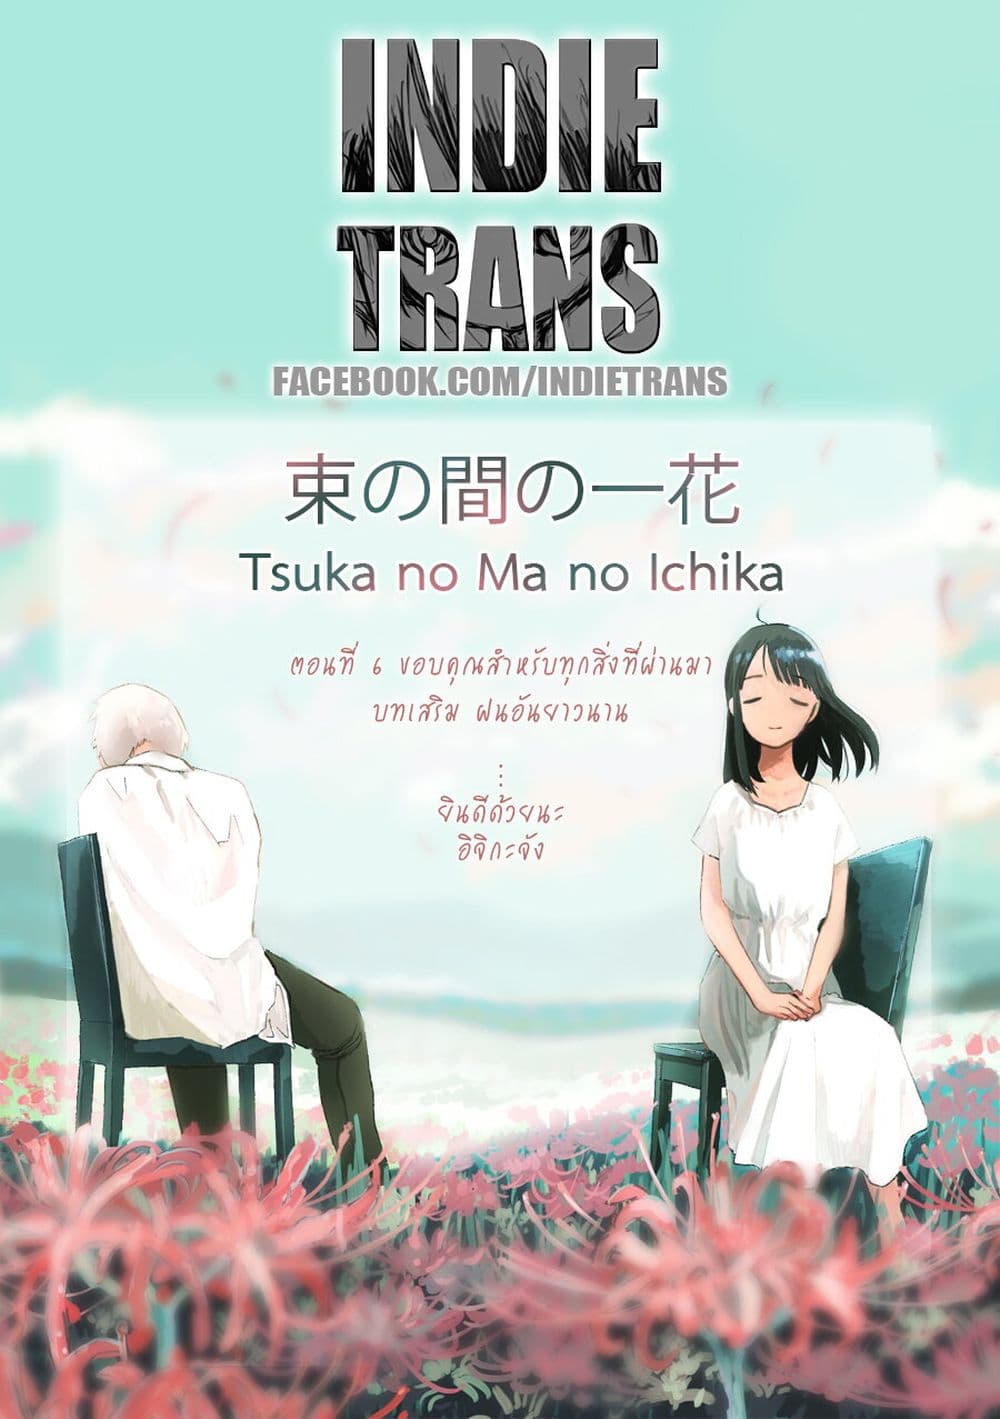 Tsuka no Ma no Ichika 6 (18)